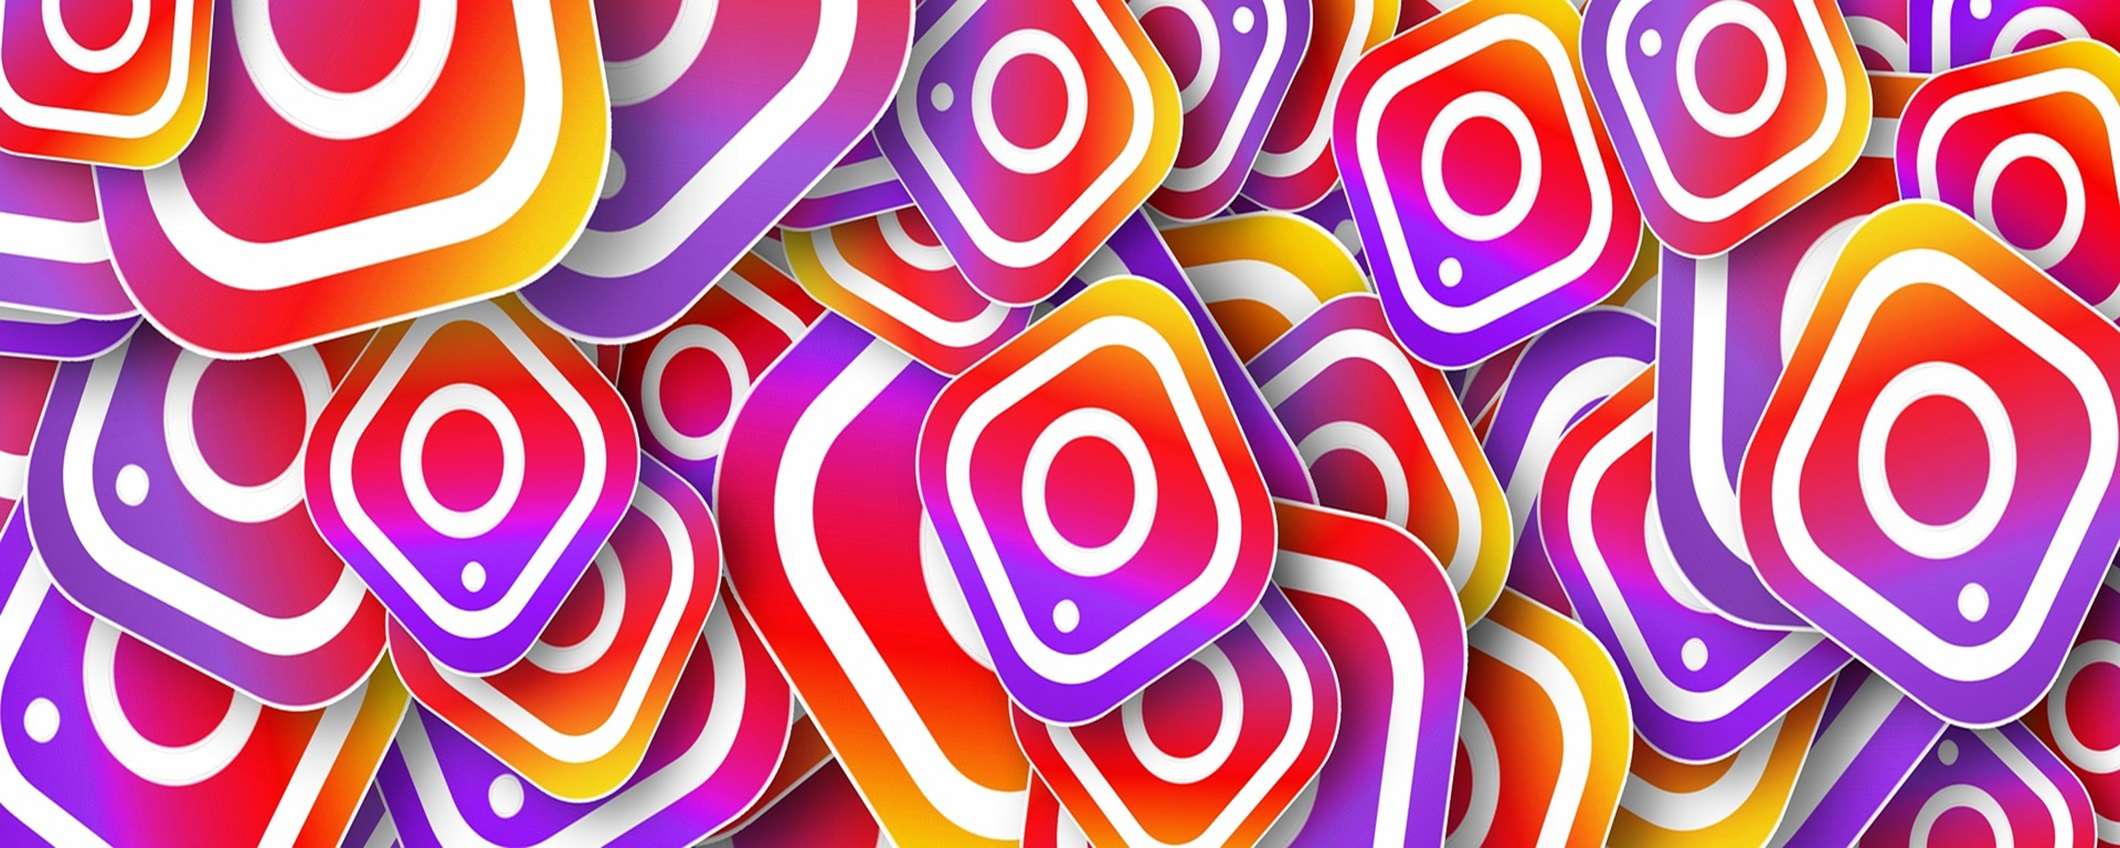 Come creare adesivi personalizzati su Instagram